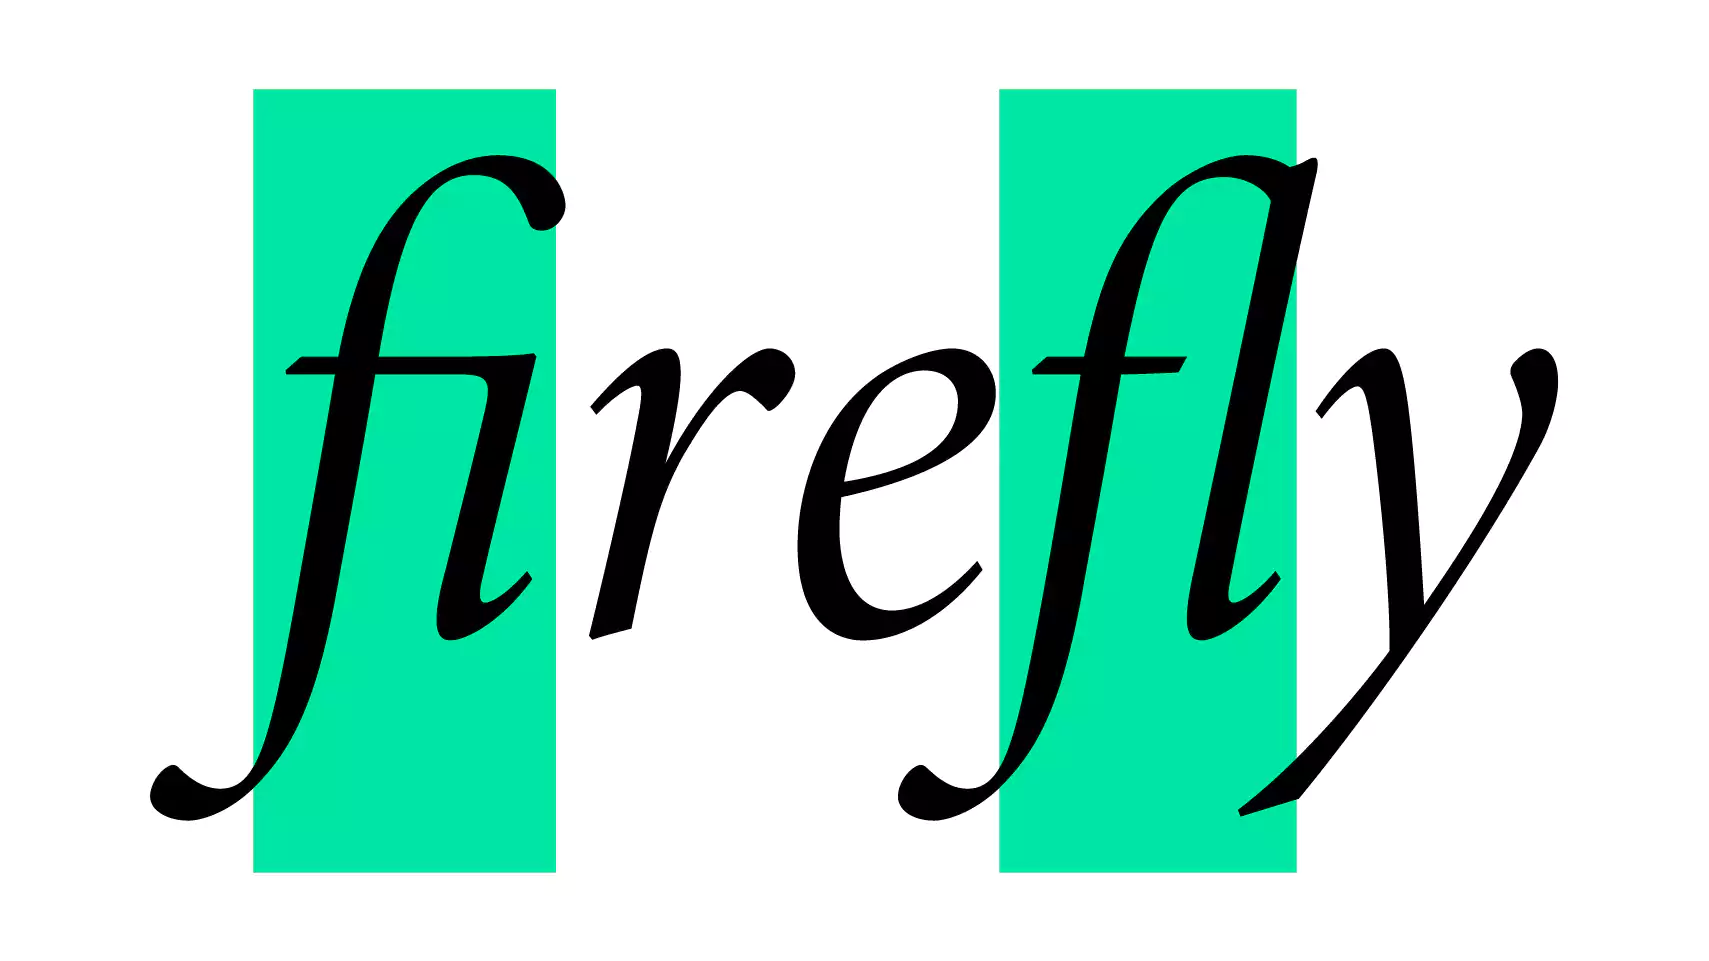 字体 Adobe Minion Pro Italic 如何处理单词 firefly?